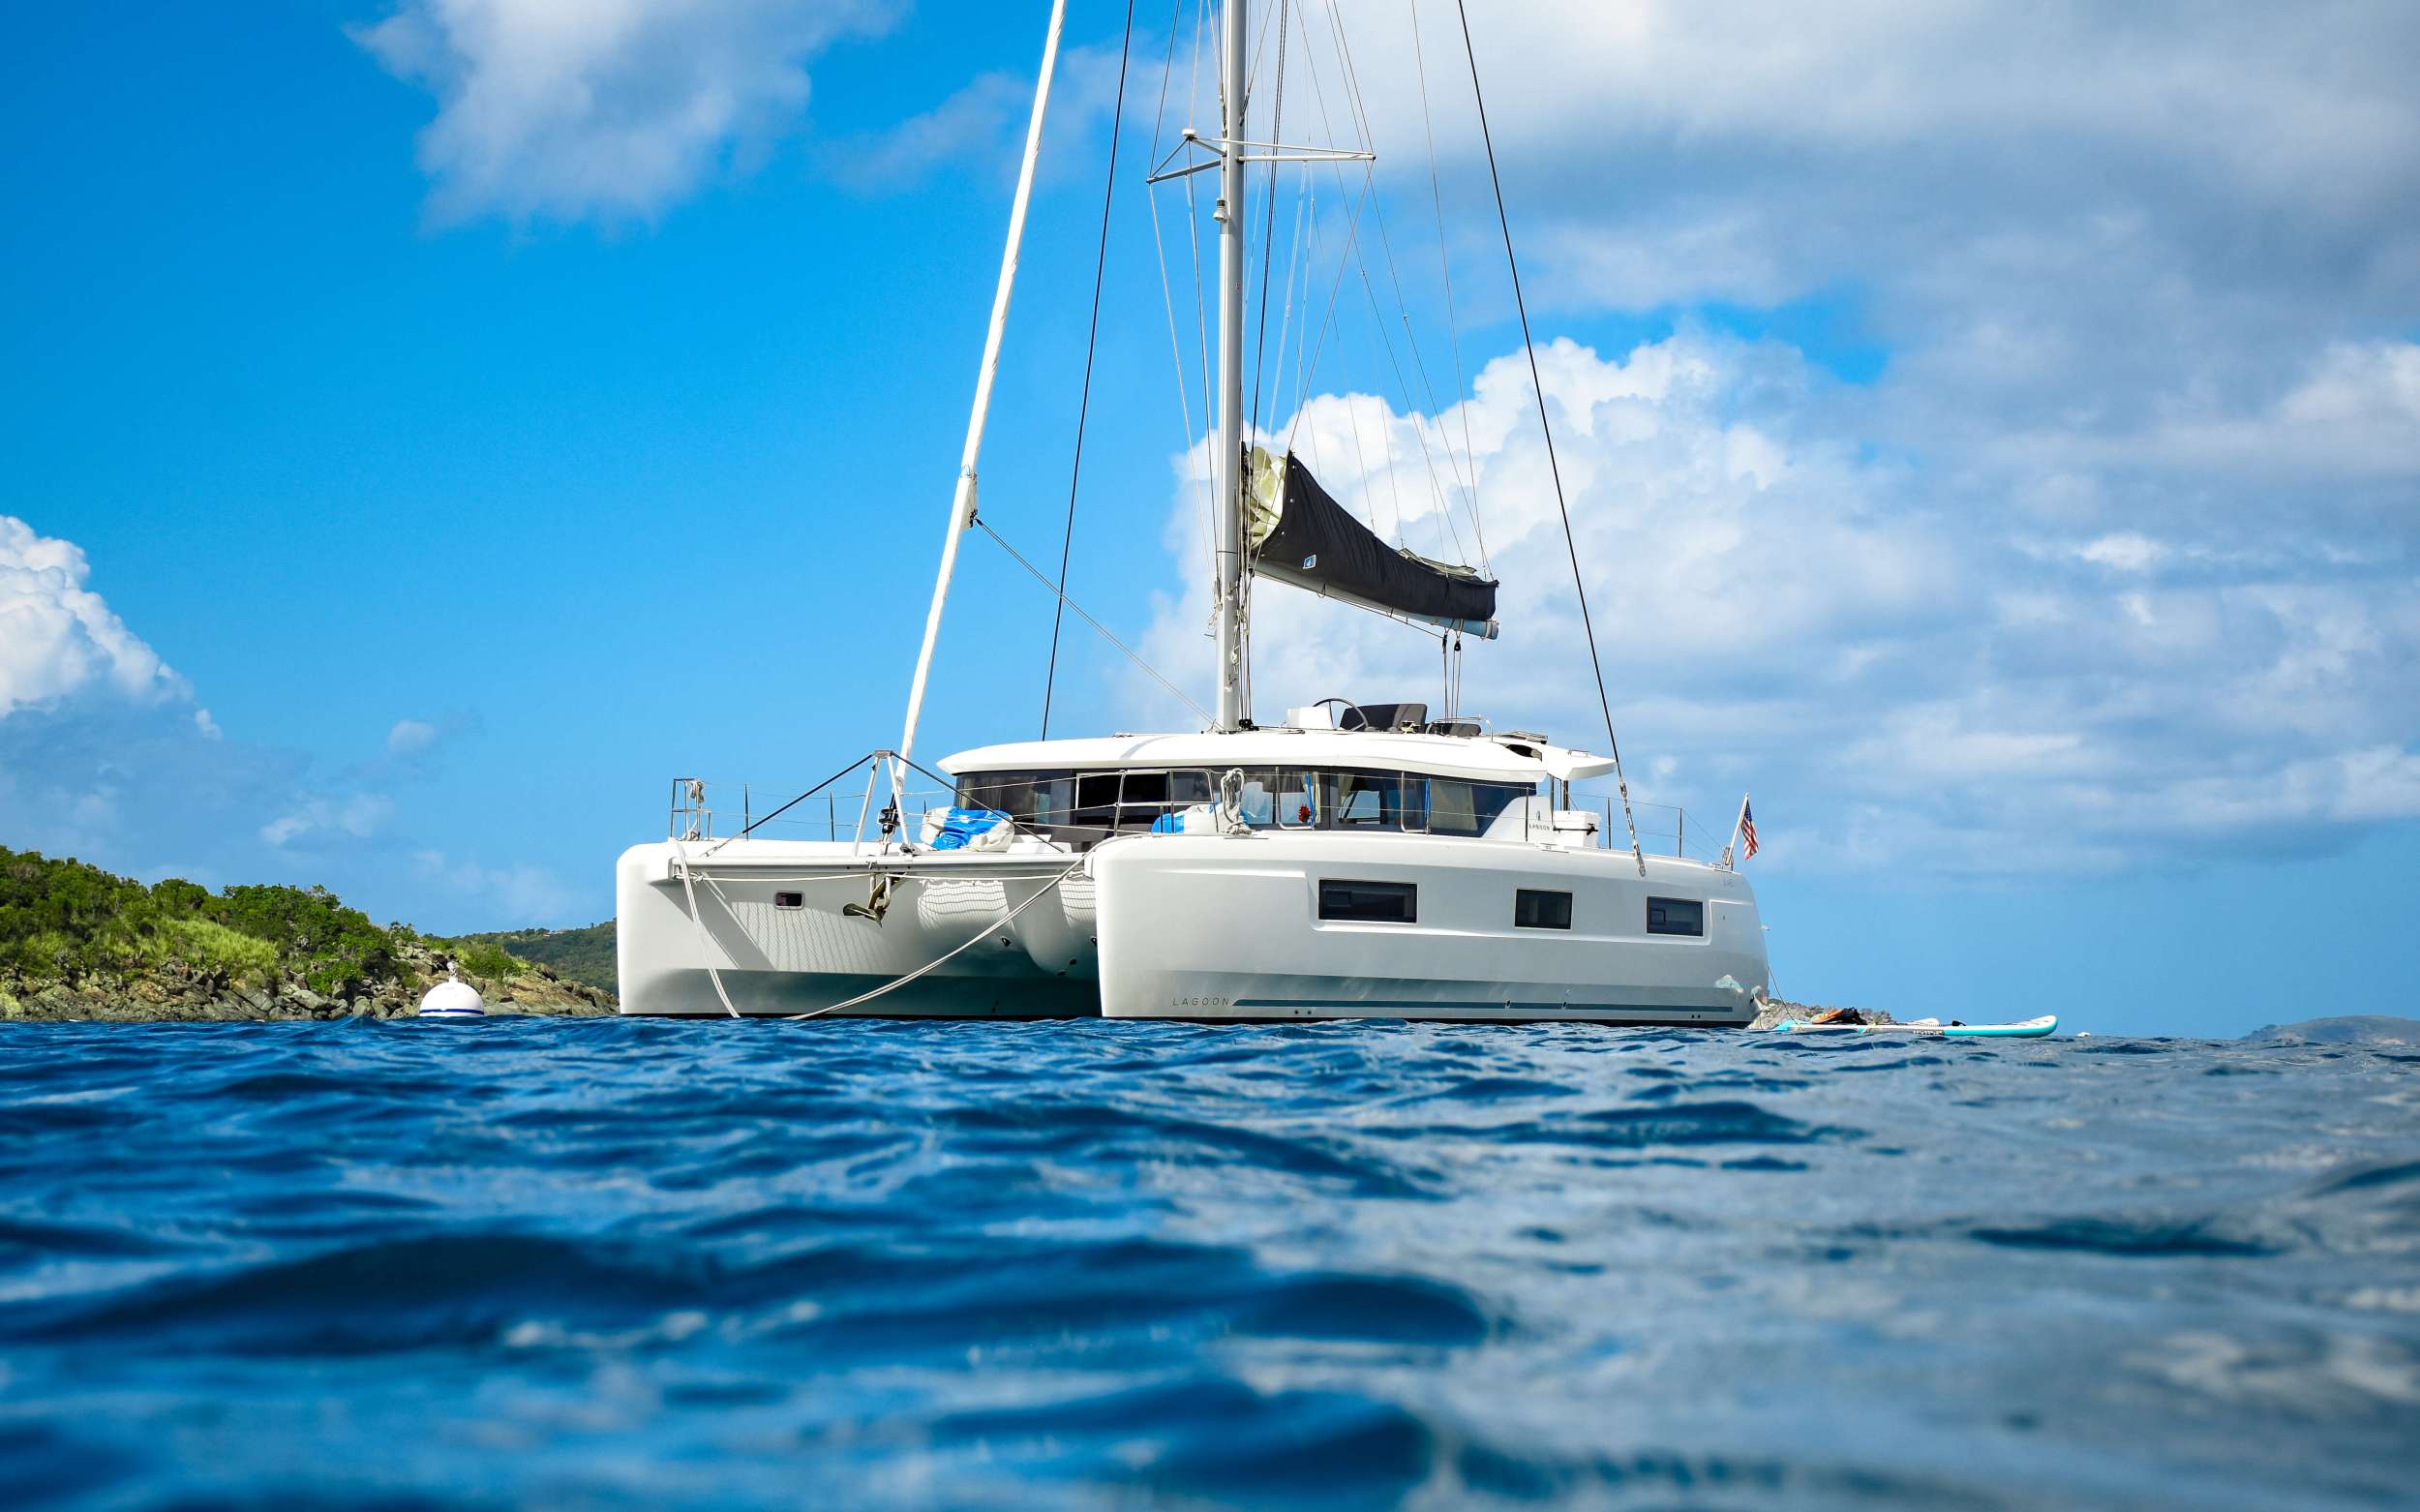 CELAVIE - Luxury yacht charter Grenada & Boat hire in Caribbean 2